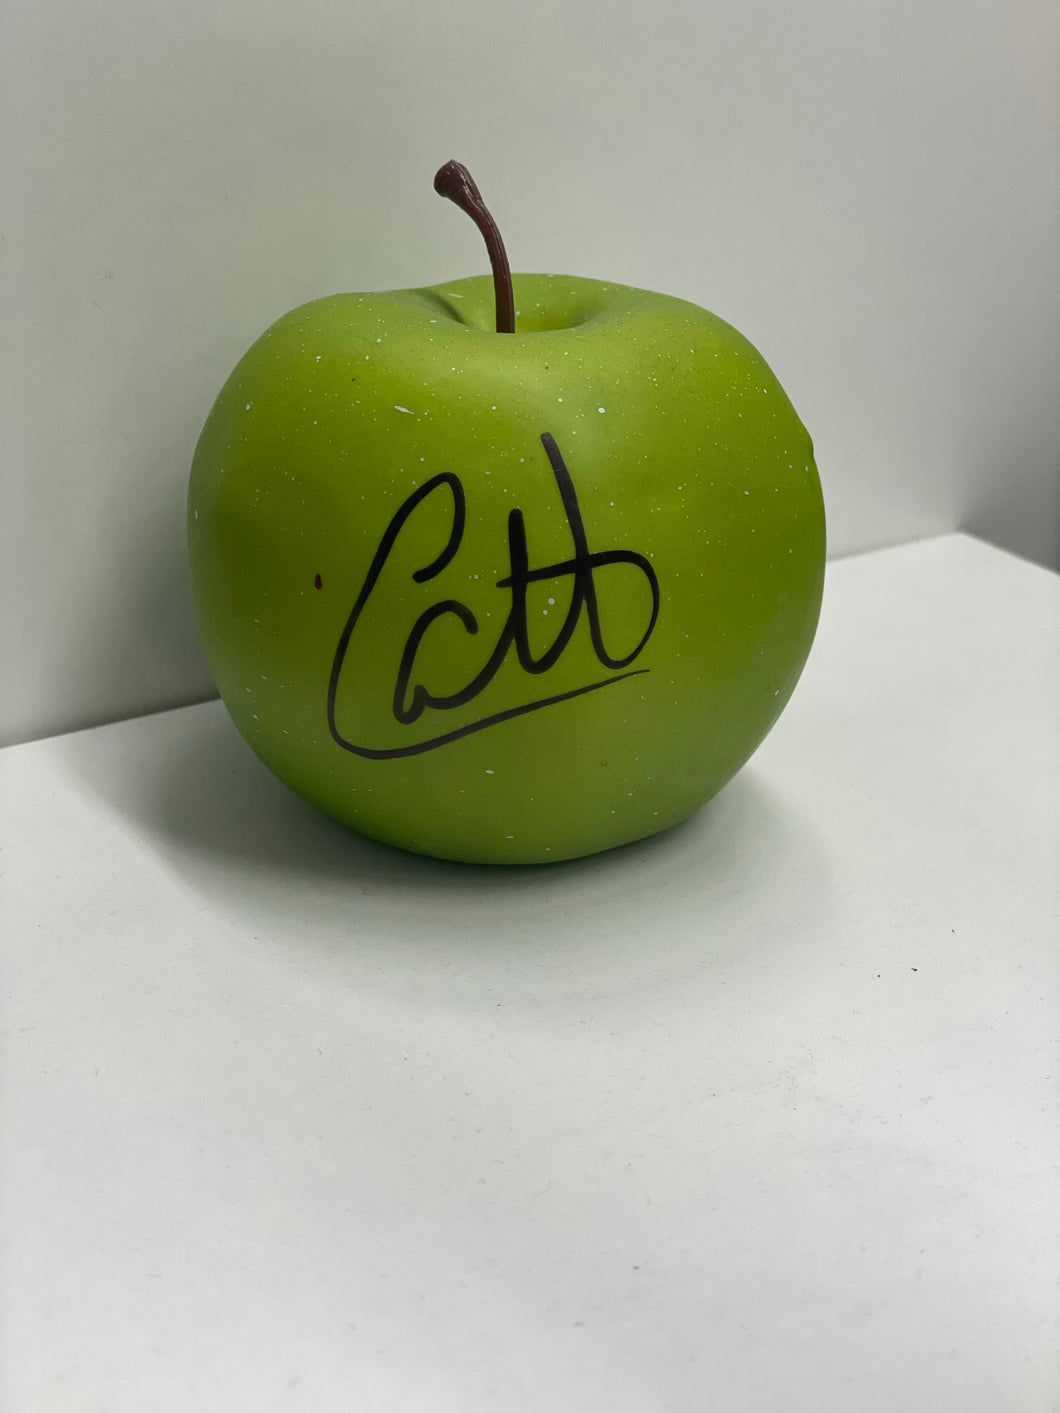 Carlito Colon Signed Apple